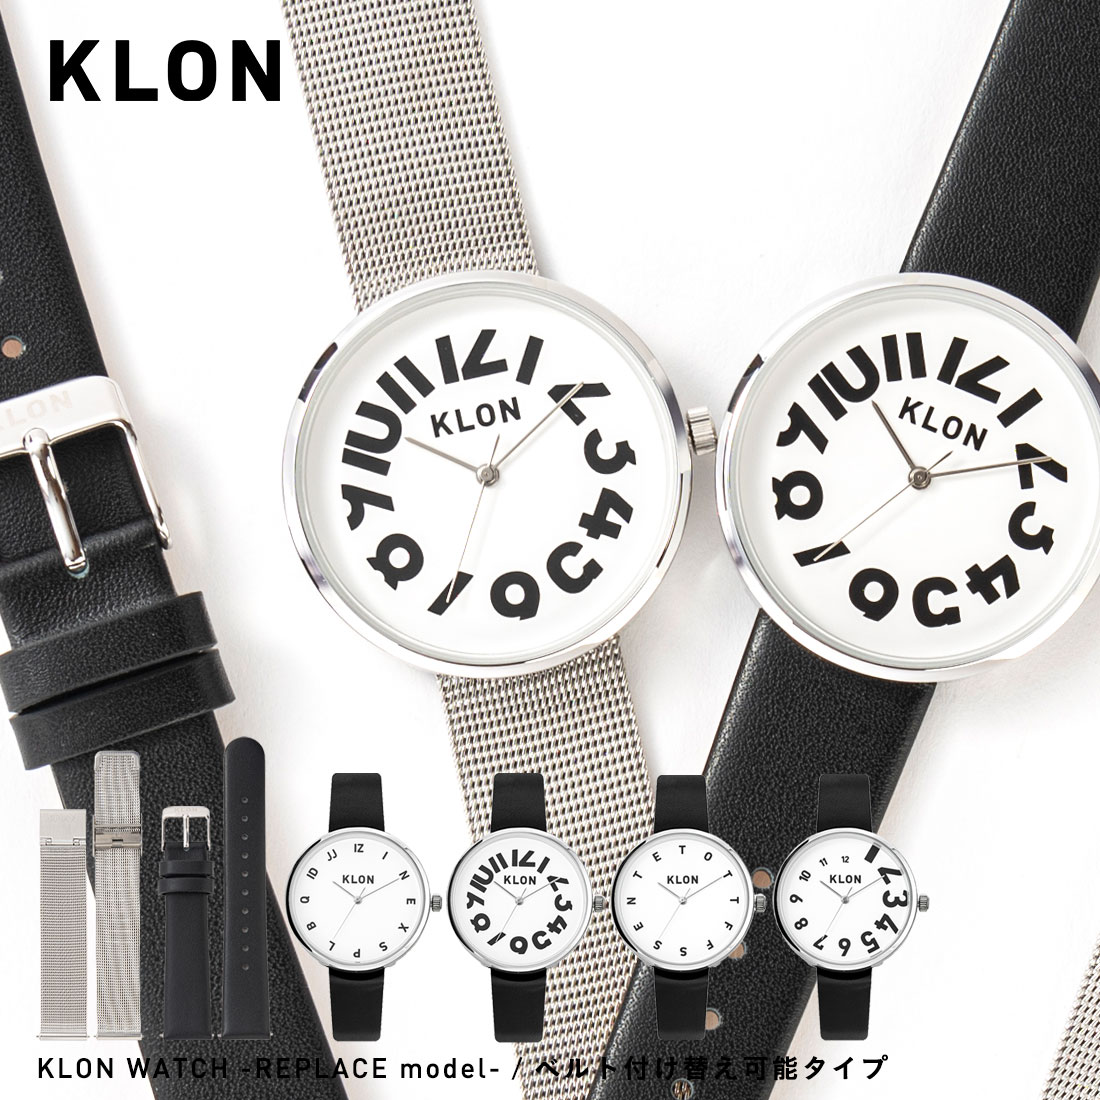 腕時計 メンズ レディース ペア ペアウォッチ クローン モノトーン お揃い ブランド ステンレス レザー ベルト シンプル ペア腕時計 カップル 記念日 プレゼント 大人 ギフト 丸型 30代 オールジェンダー KLON WATCH -REPLACE model-